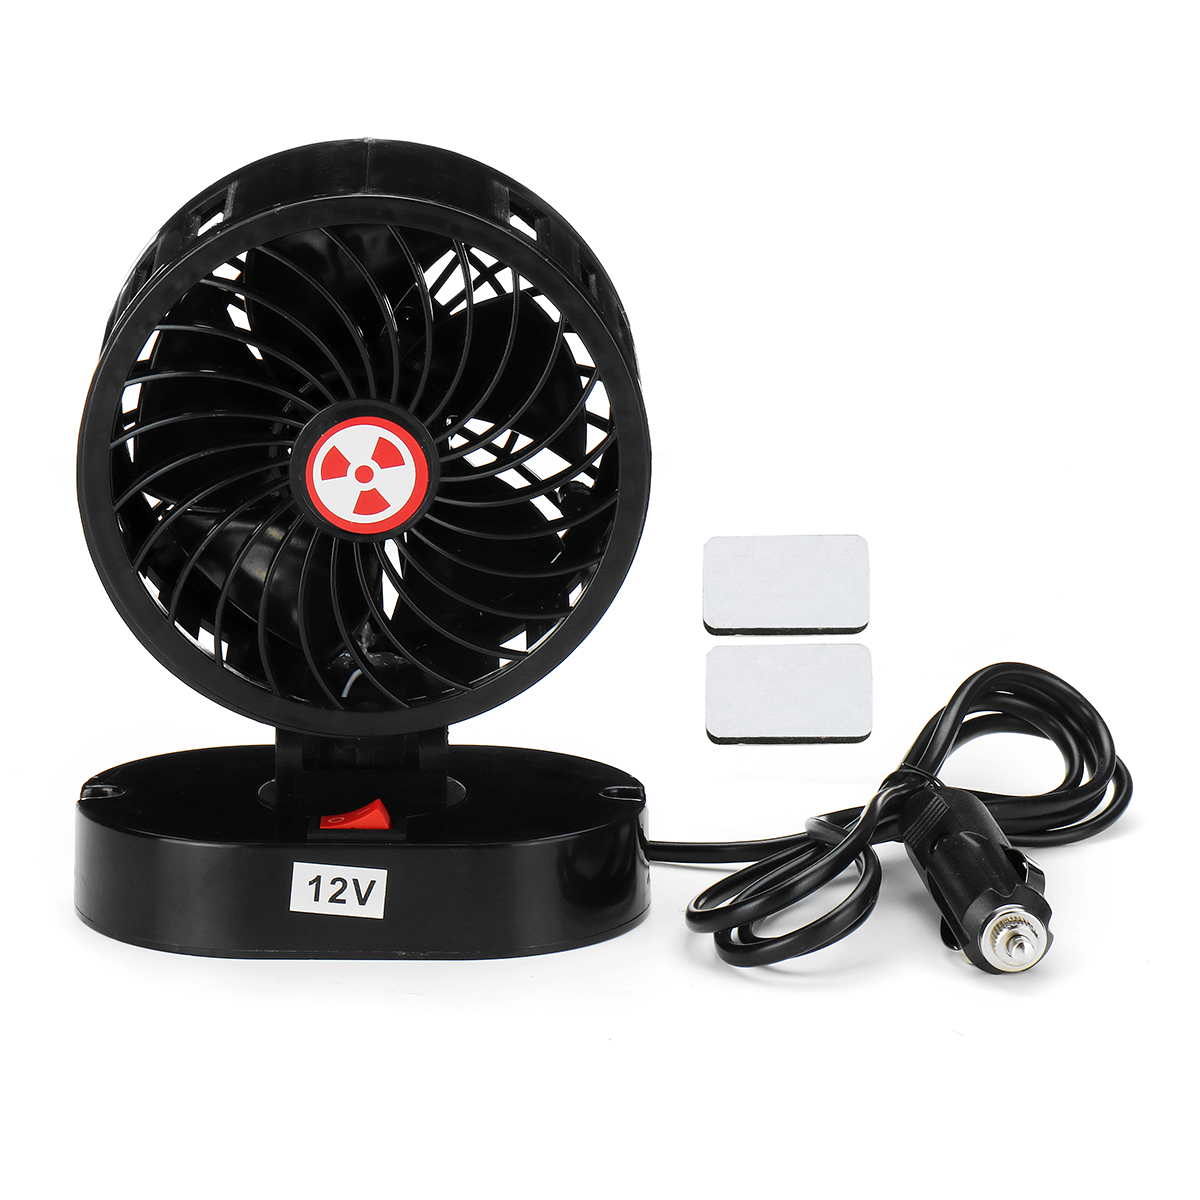 

12V 30W Mini Portable Car Fan Cooling Air Fan Silent Cooler Fan